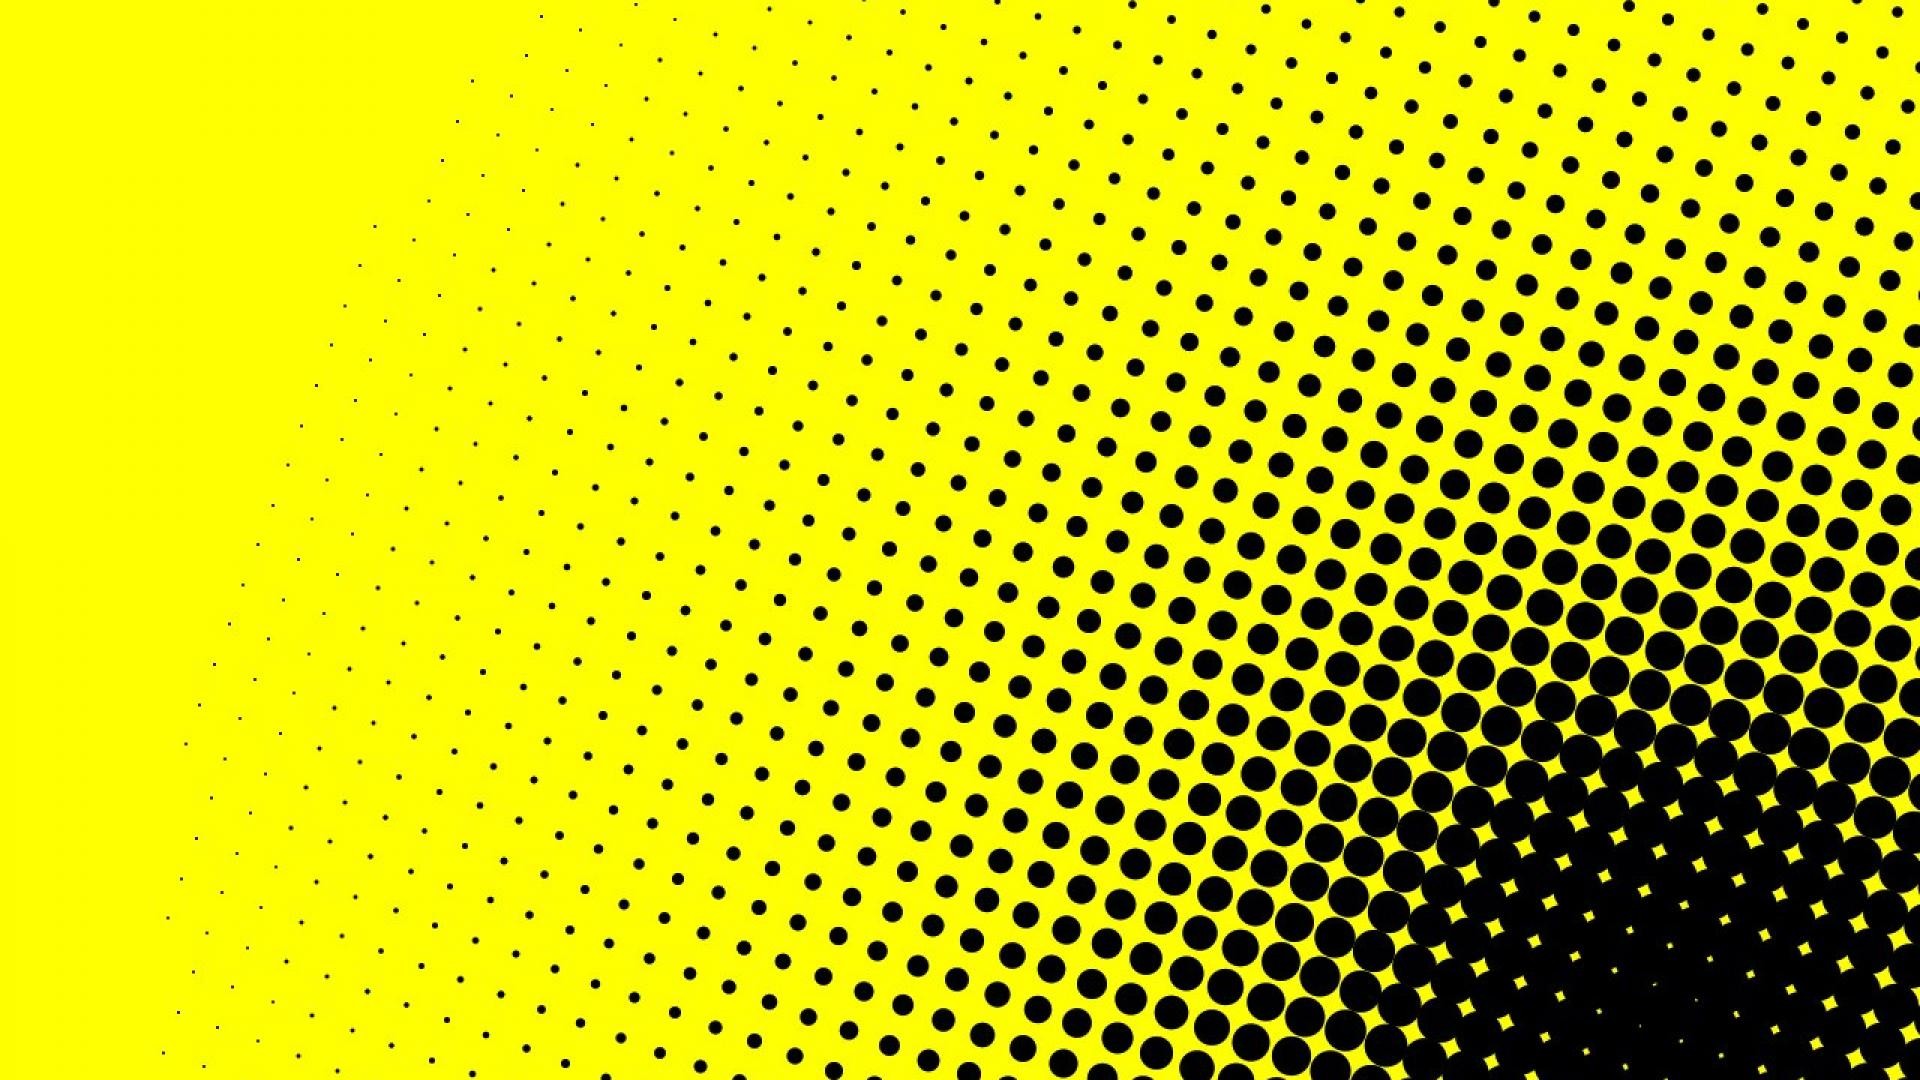 검정색과 노란색 벽지,노랑,초록,무늬,선,주황색